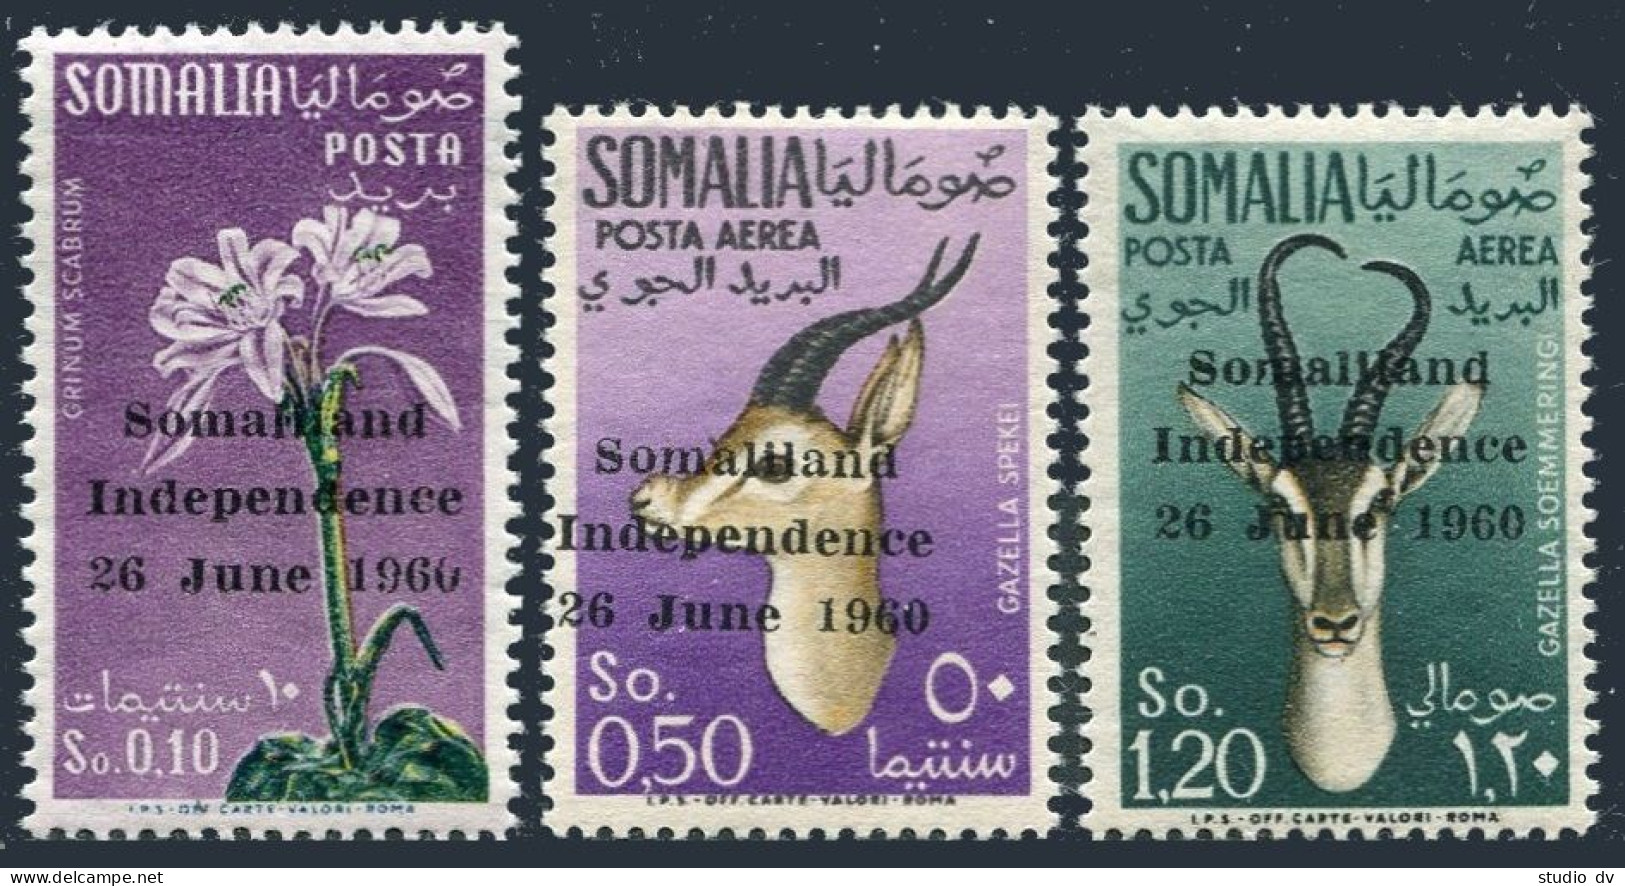 Somalia 242,C68-69, MNH. Michel 1-3. Independence, 1960. Antelopes, Flowers. - Somalia (1960-...)